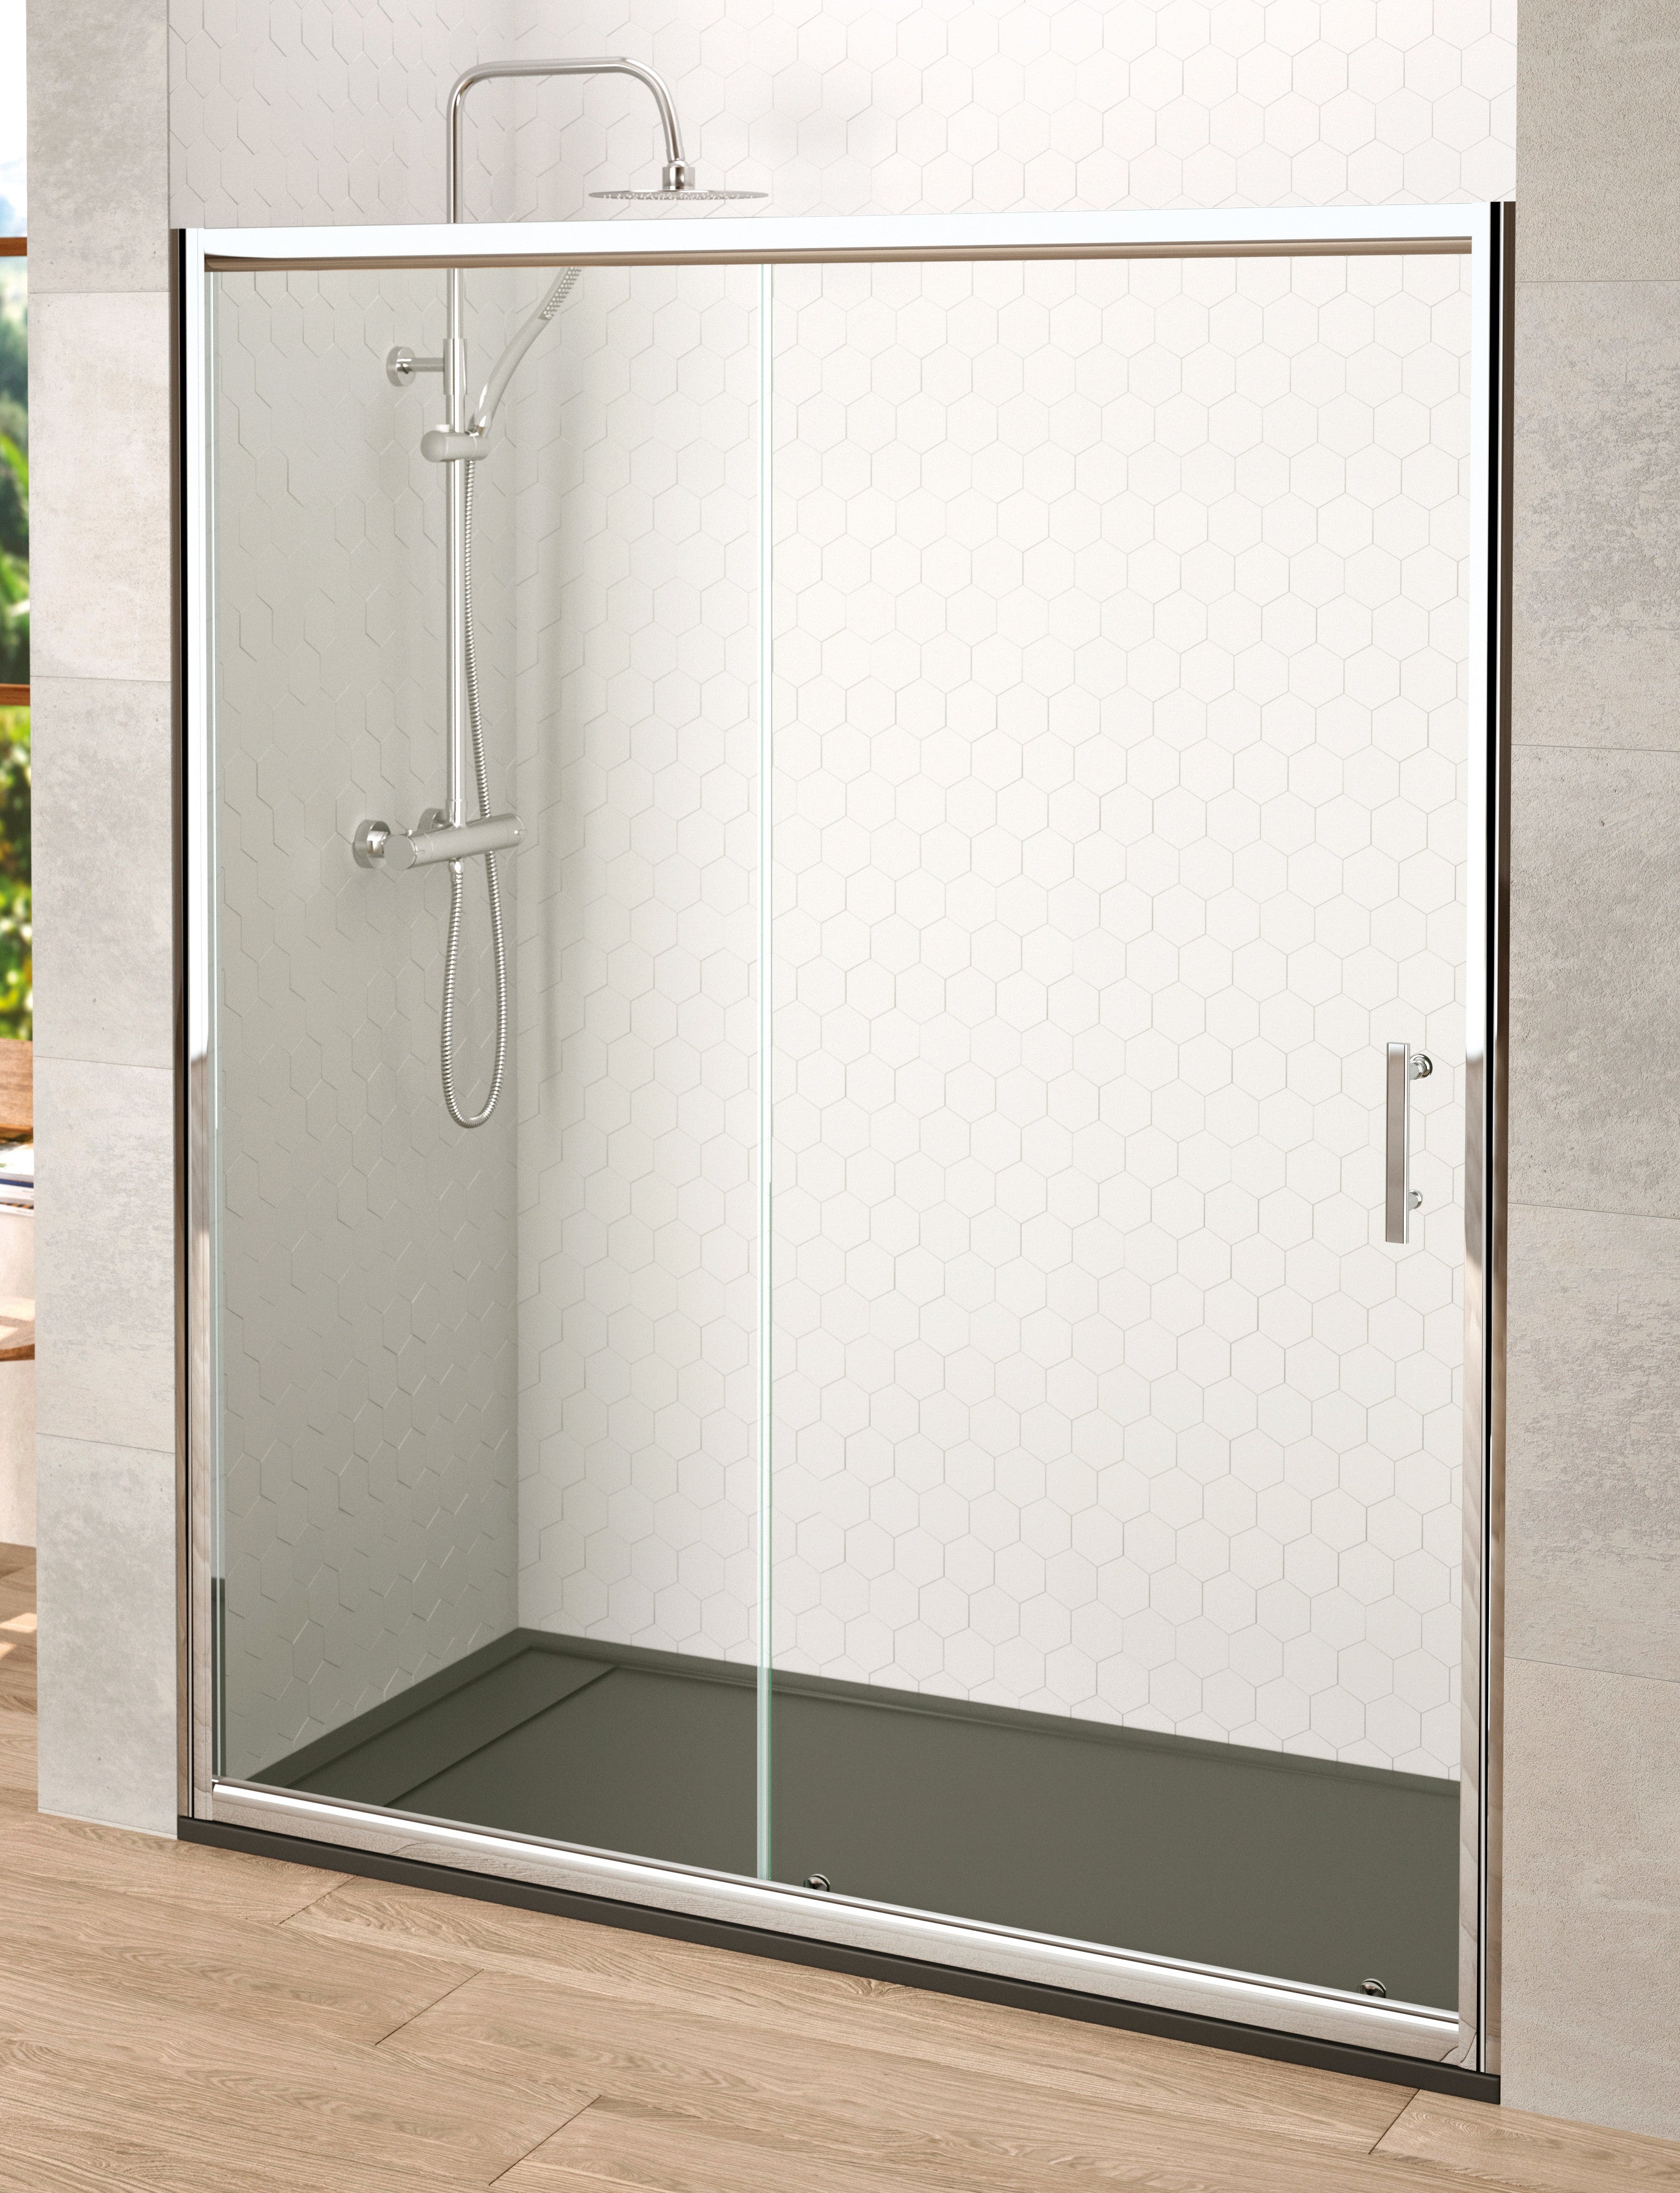 Mampara de ducha Frontal 1 fijo + 1 puerta corredera. Transparente